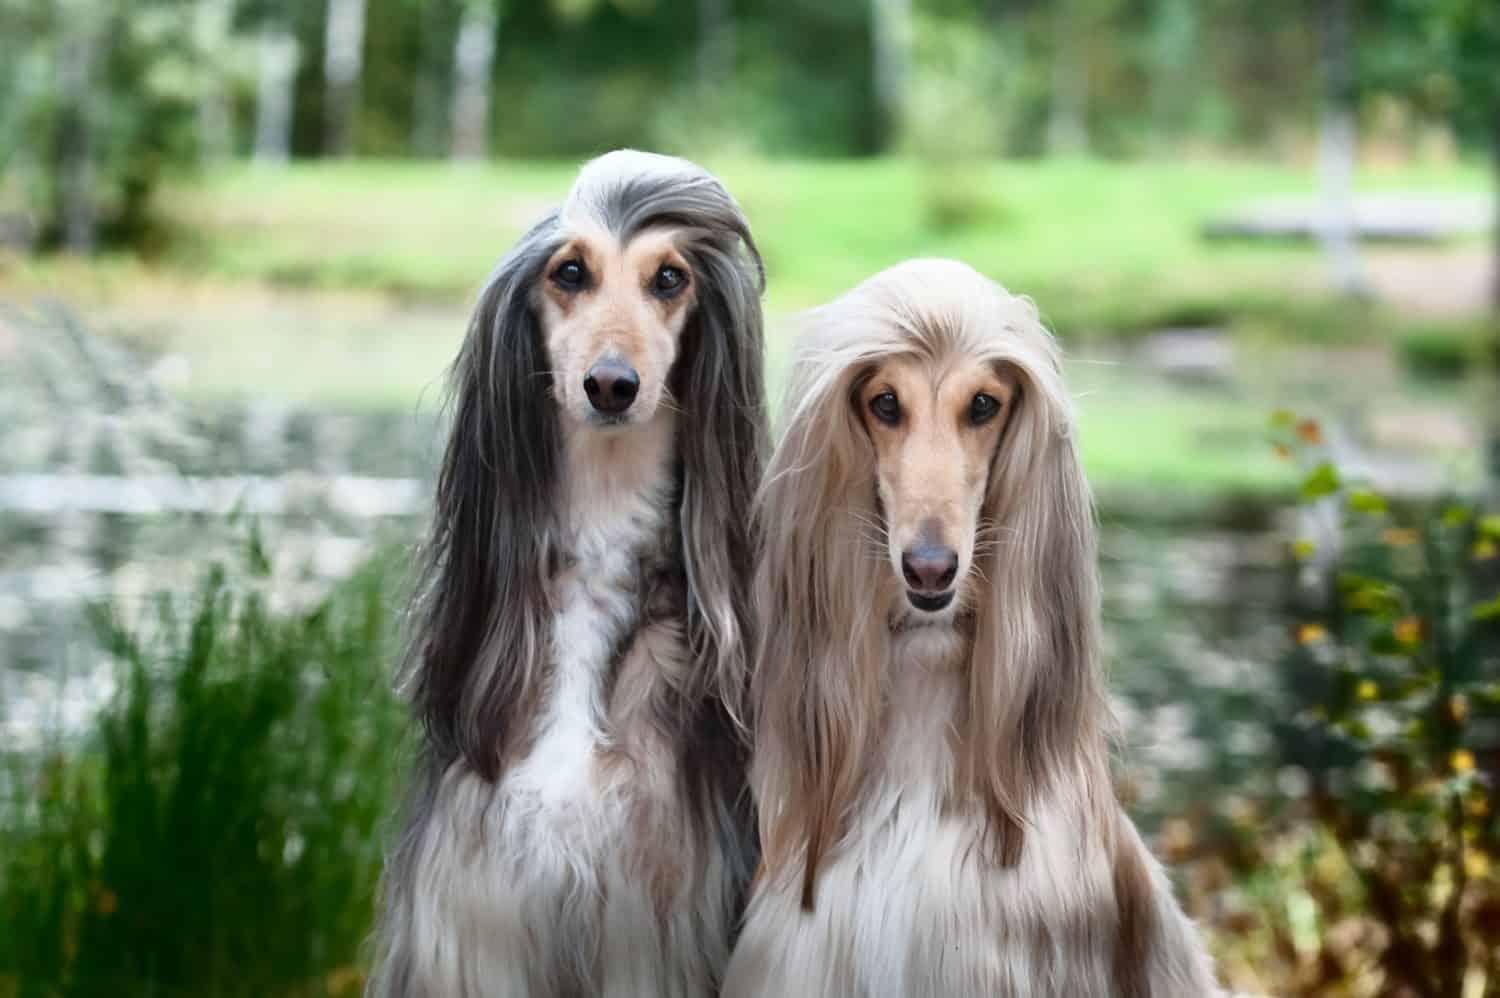 Ritratto di due levrieri afgani, bellissimi, aspetto da esposizione canina.  Salone di bellezza, toelettatura, cura del cane, acconciature per cani, dog stylist